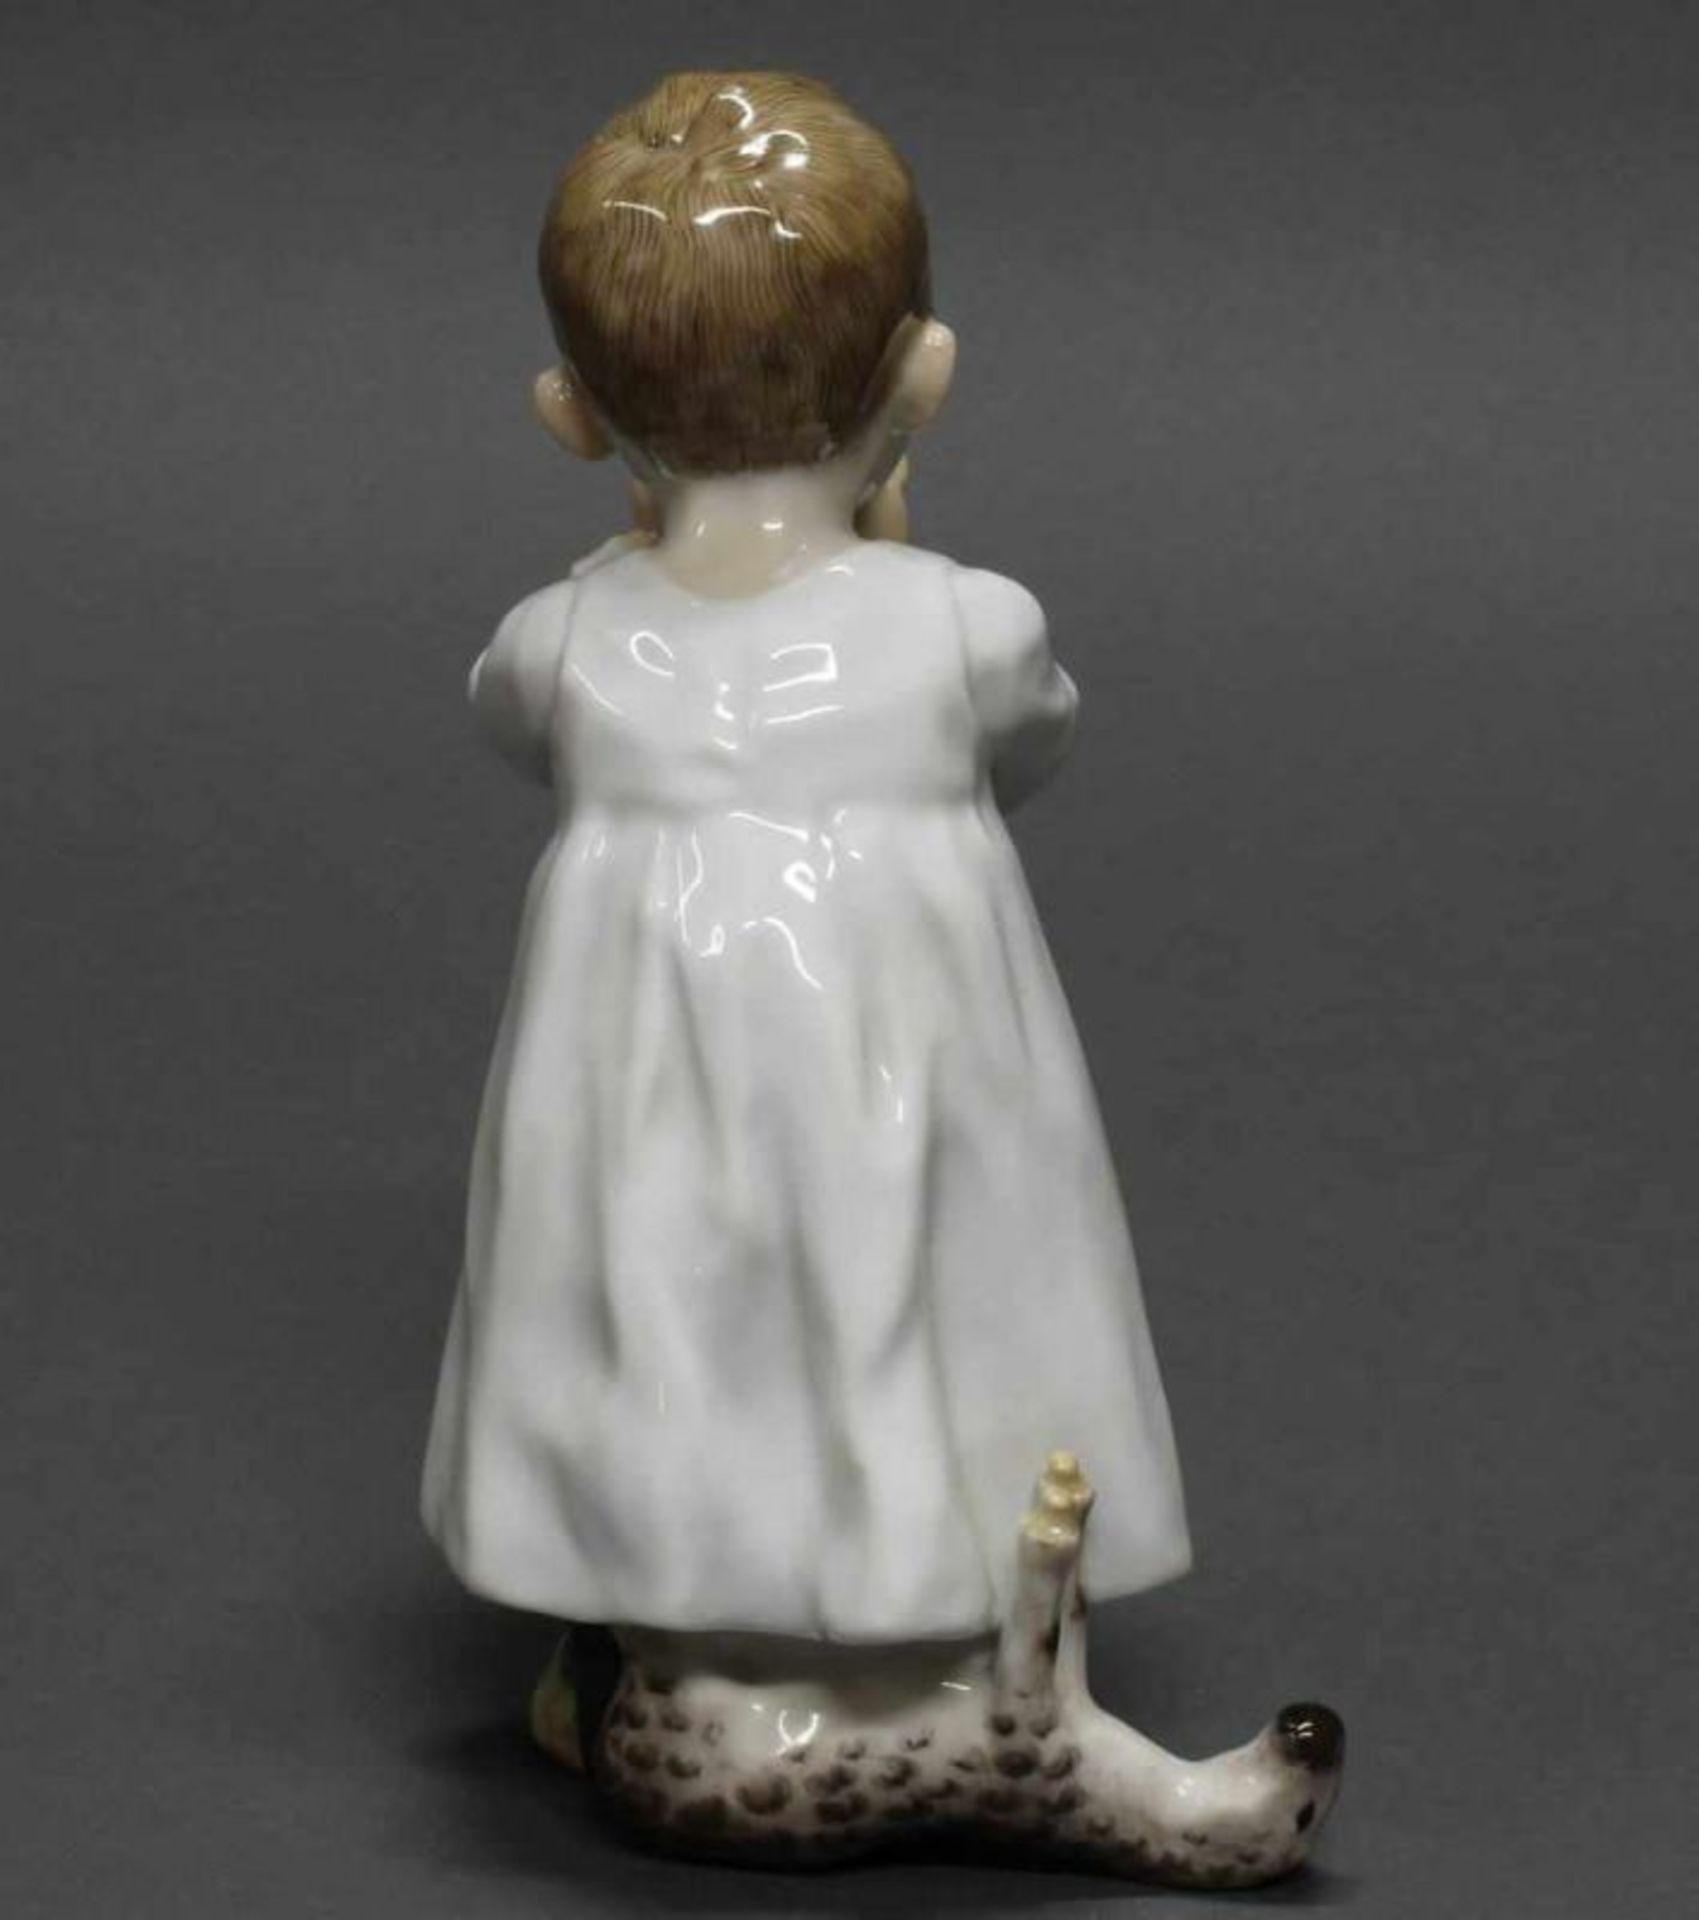 Porzellanfigur, "Kind aus einer Tasse trinkend", Meissen, Schwertermarke, 1905-1924, 1. Wahl, - Image 3 of 4